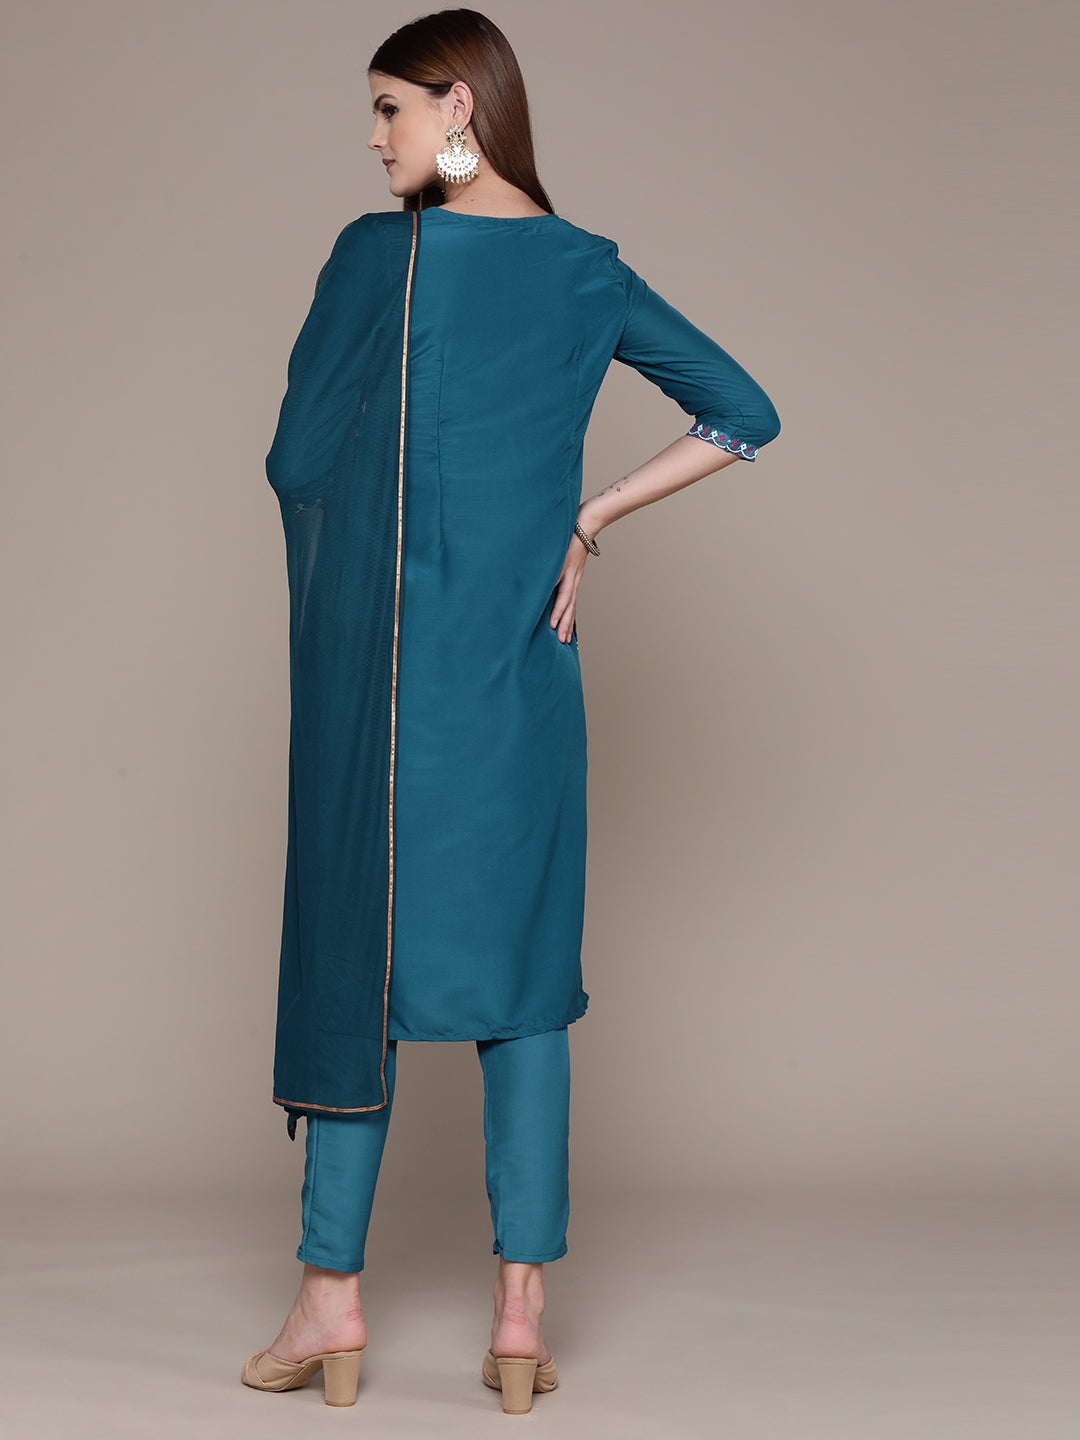 Women's Blue Chinon Kurta, Pant And Dupatta Set - Ziyaa